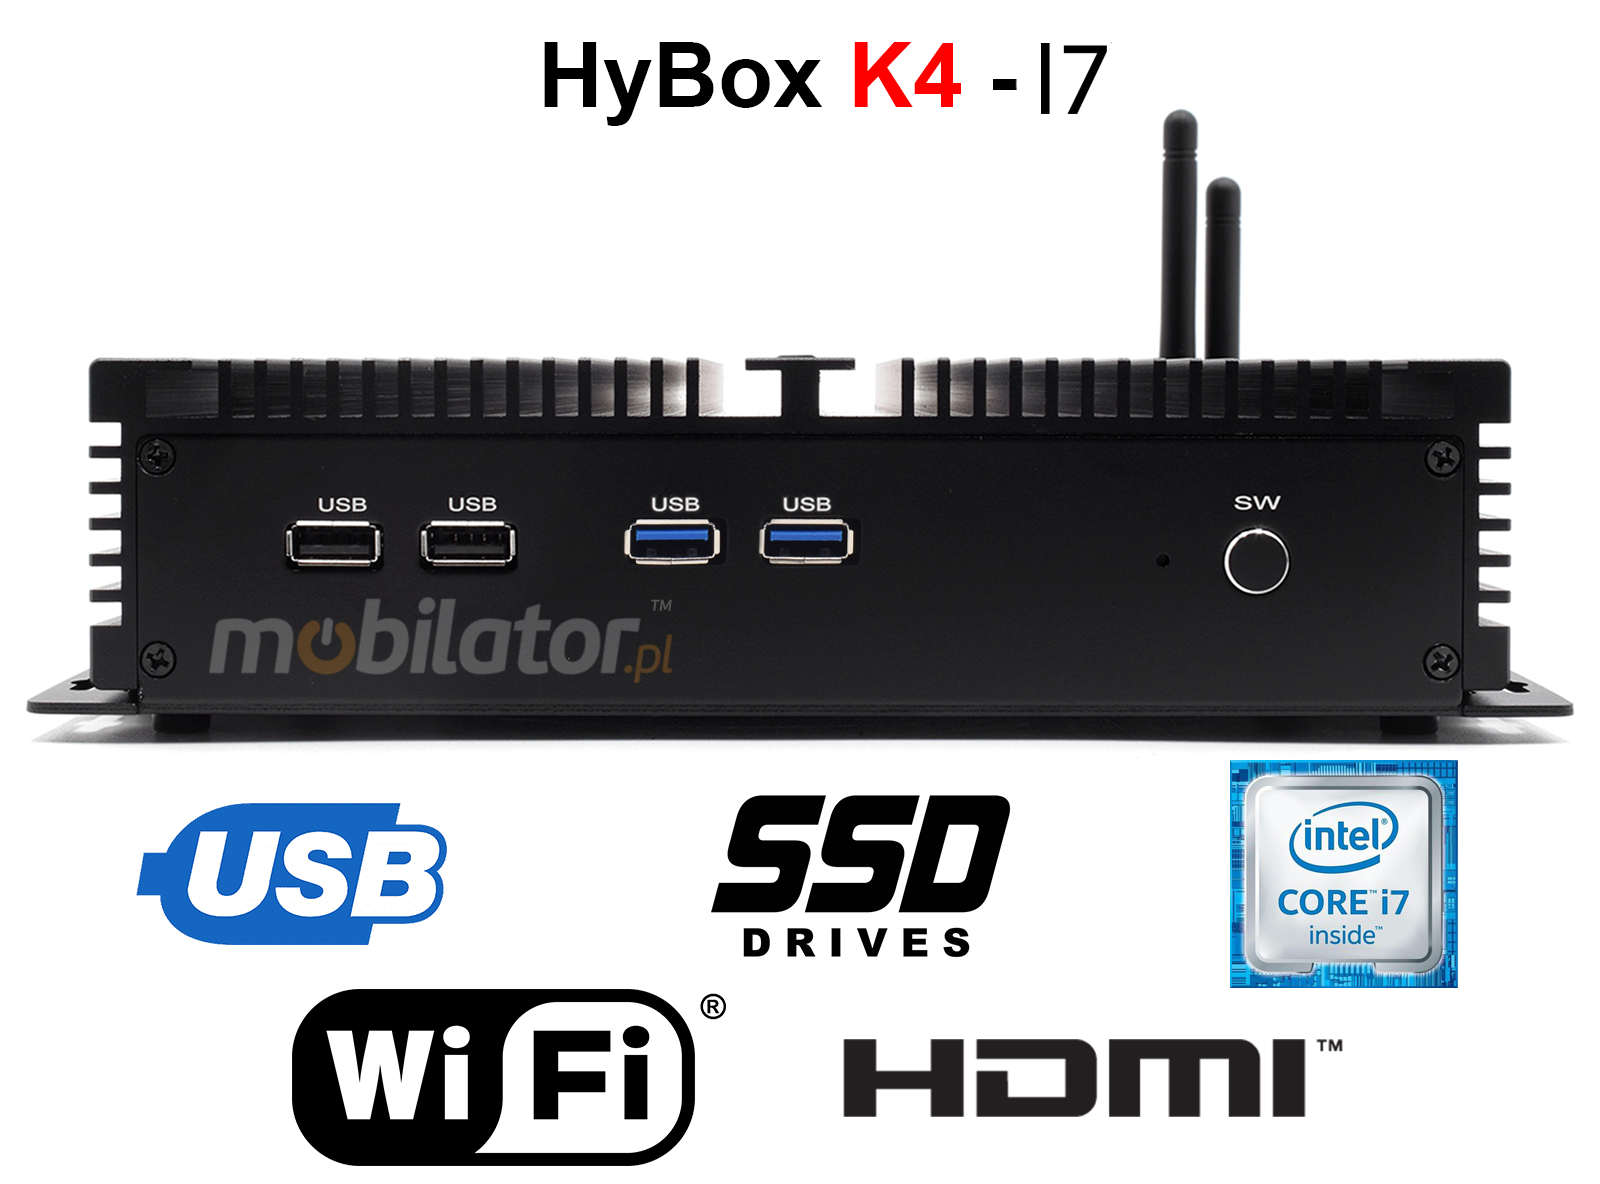 HyBOX K4 may niezawodny szybki i wydajny mini pc w metalowej obudowie przystosowany do pracy na hurtowni